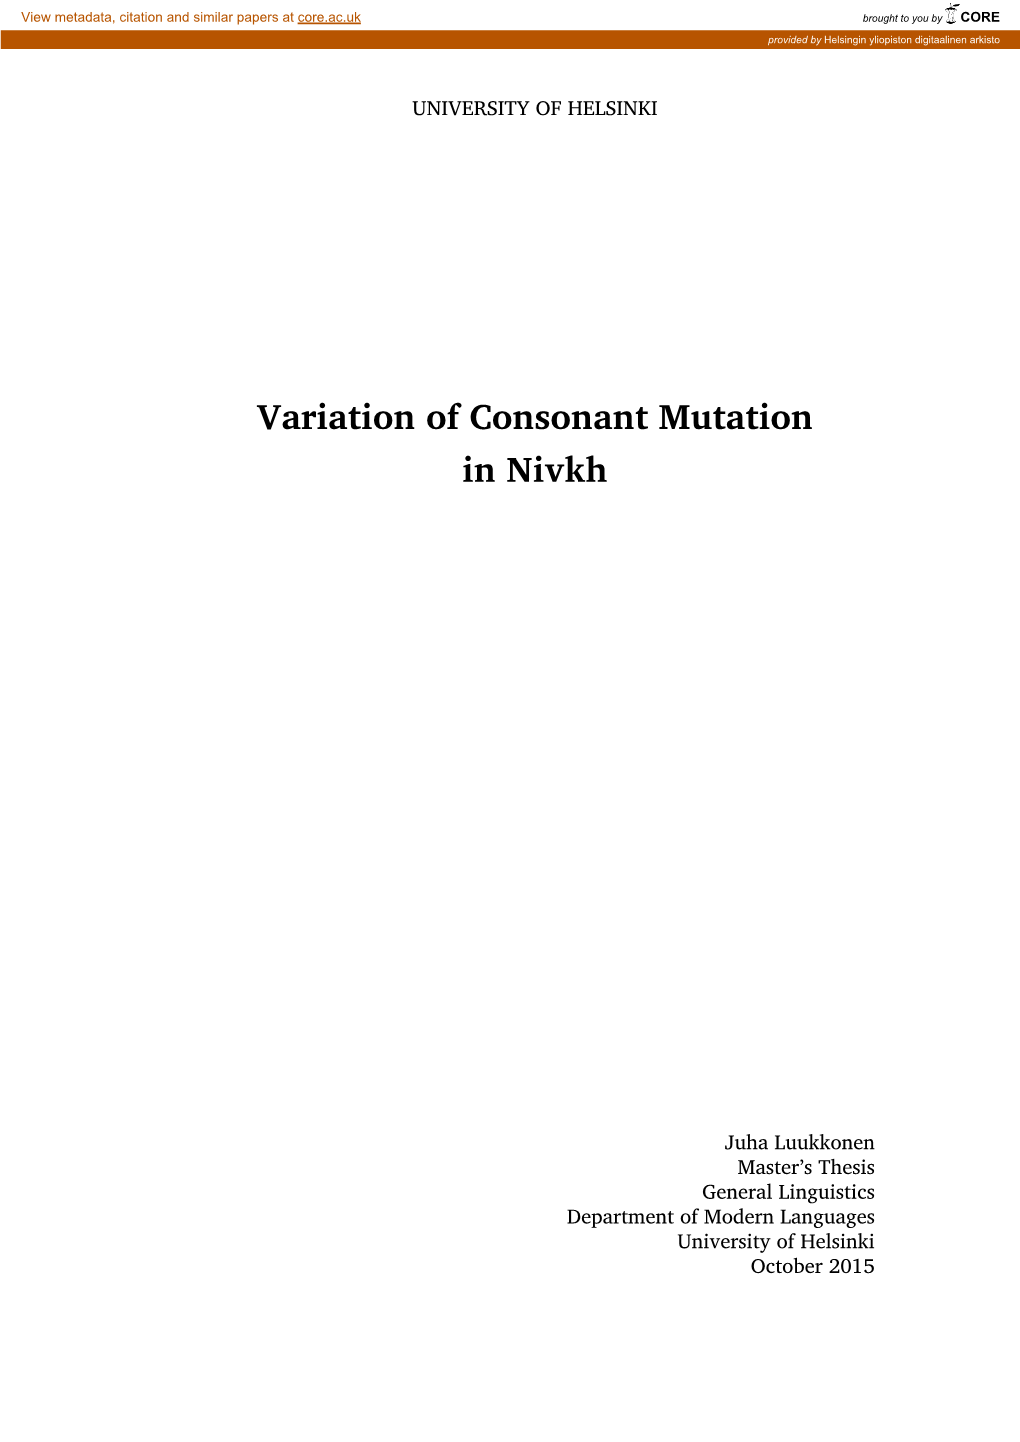 Variation of Consonant Mutation in Nivkh